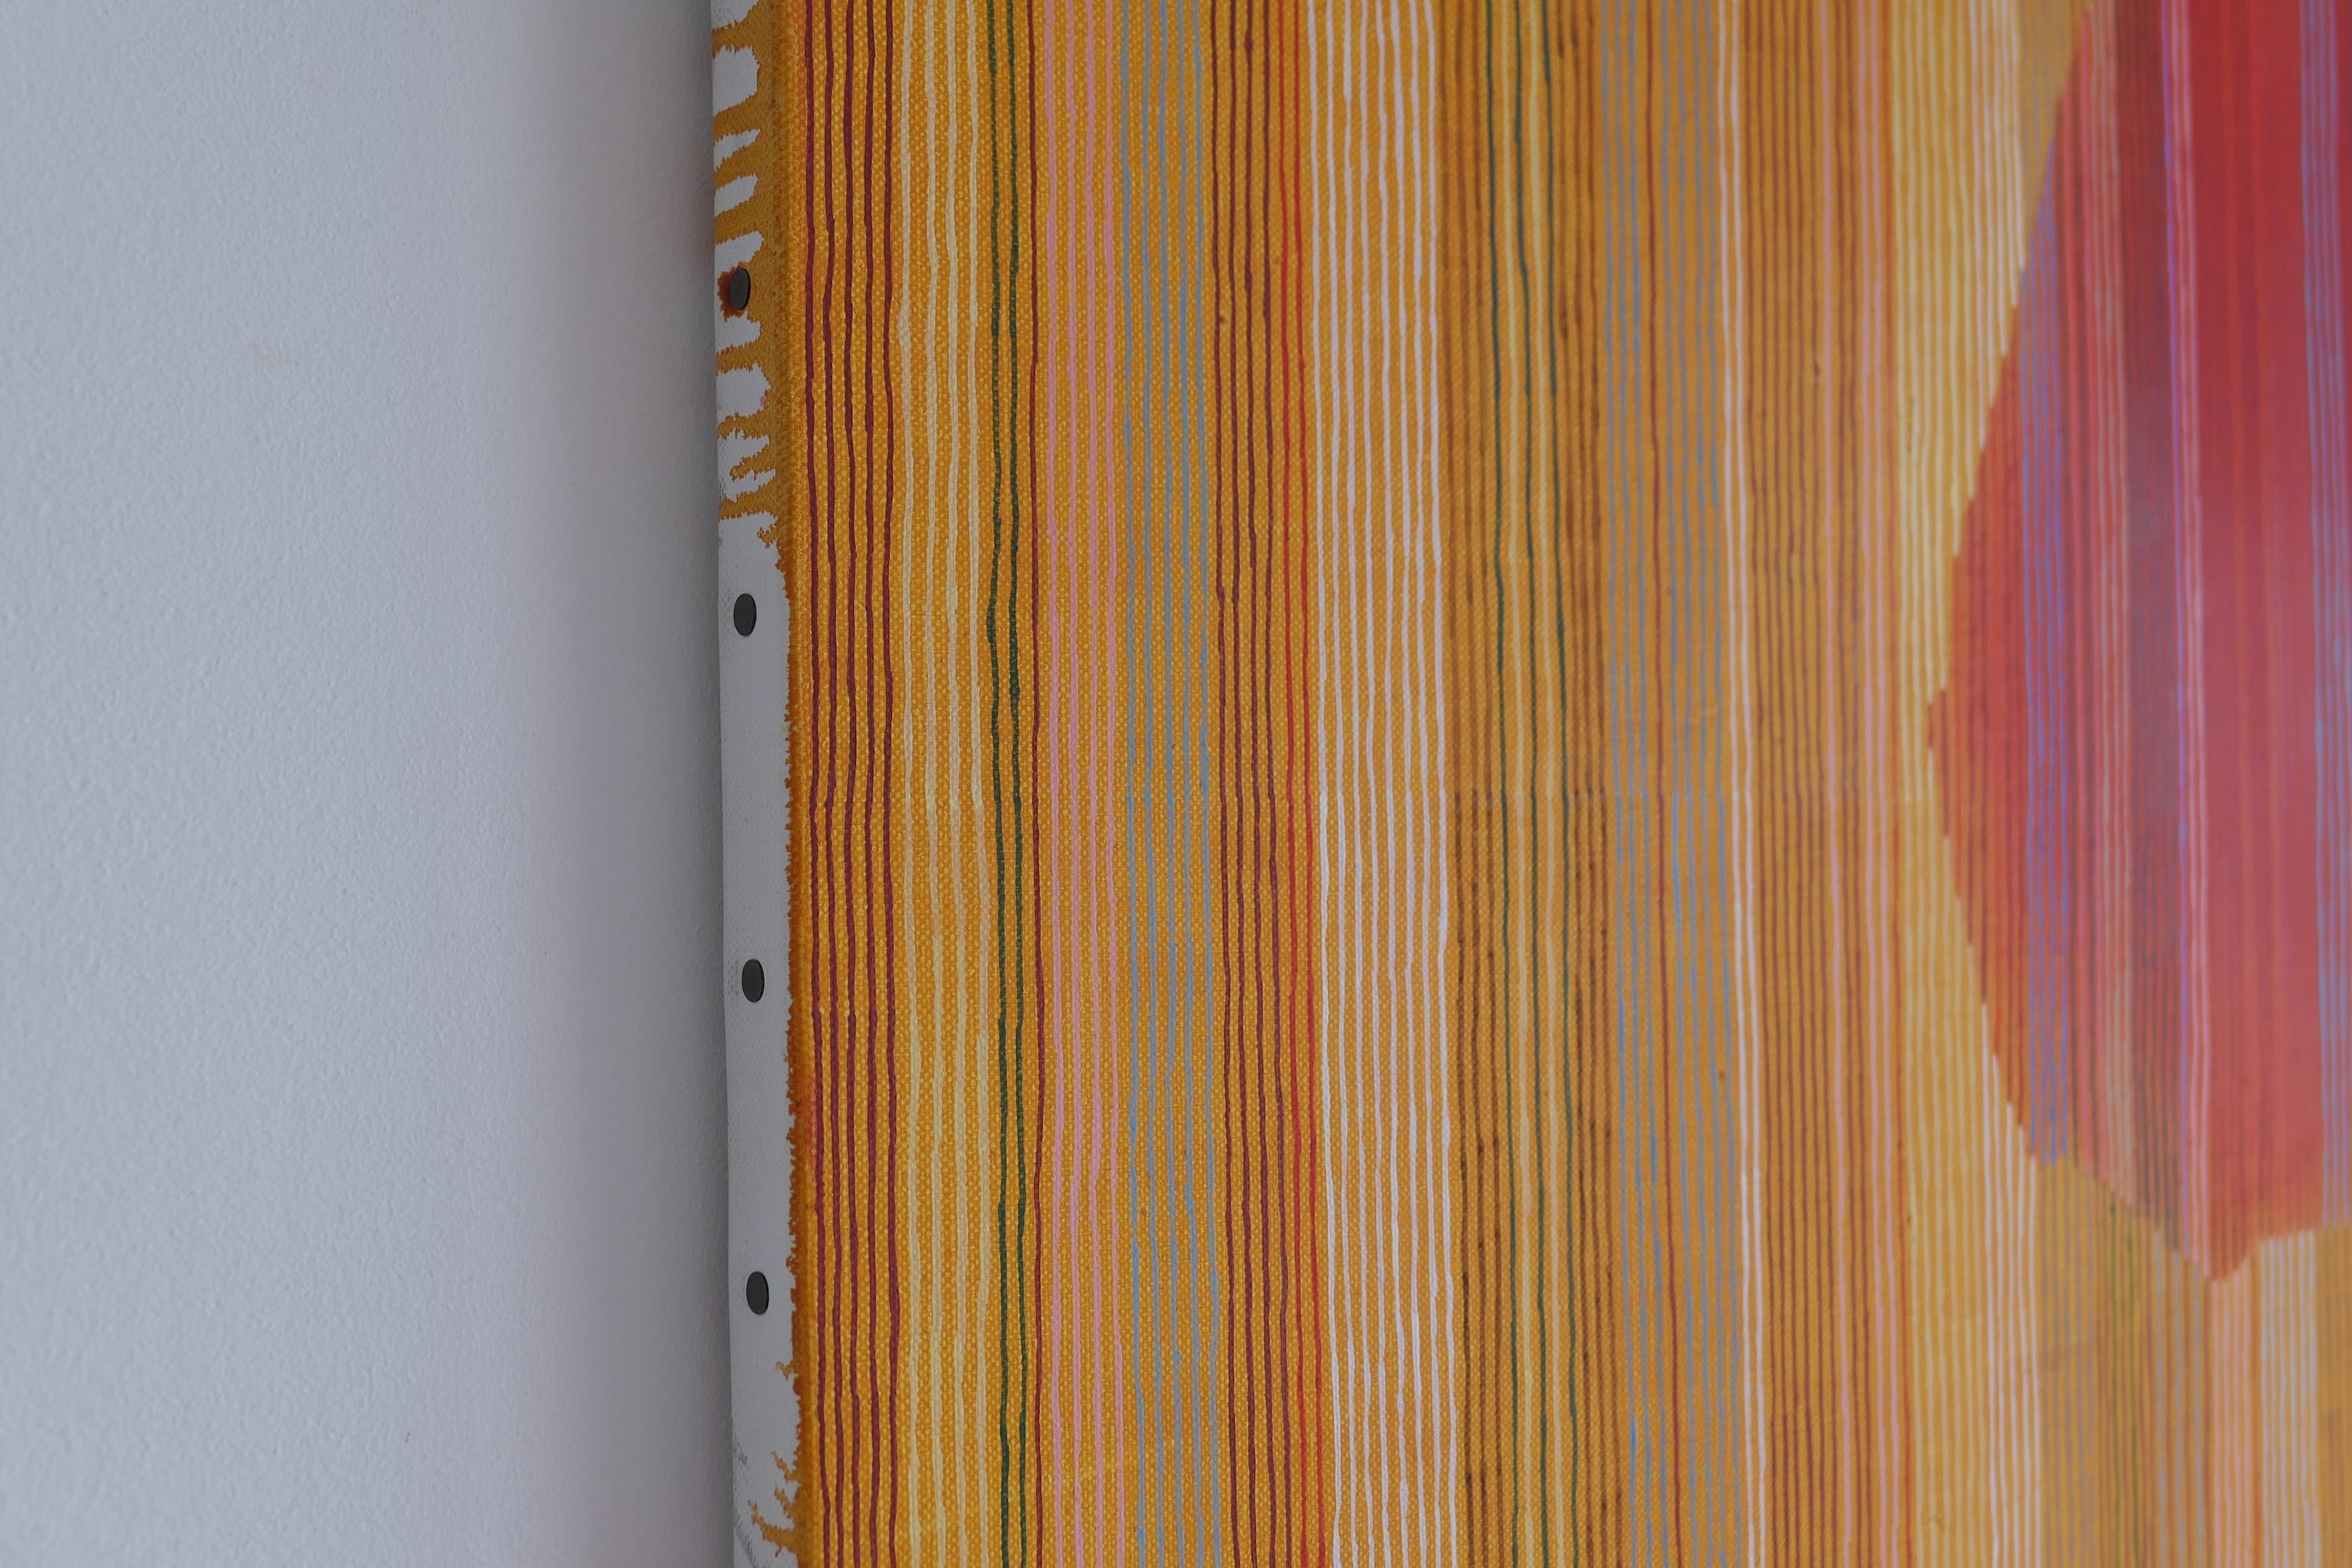 Chaud (peinture abstraite) - Orange Abstract Painting par Jérémie Iordanoff